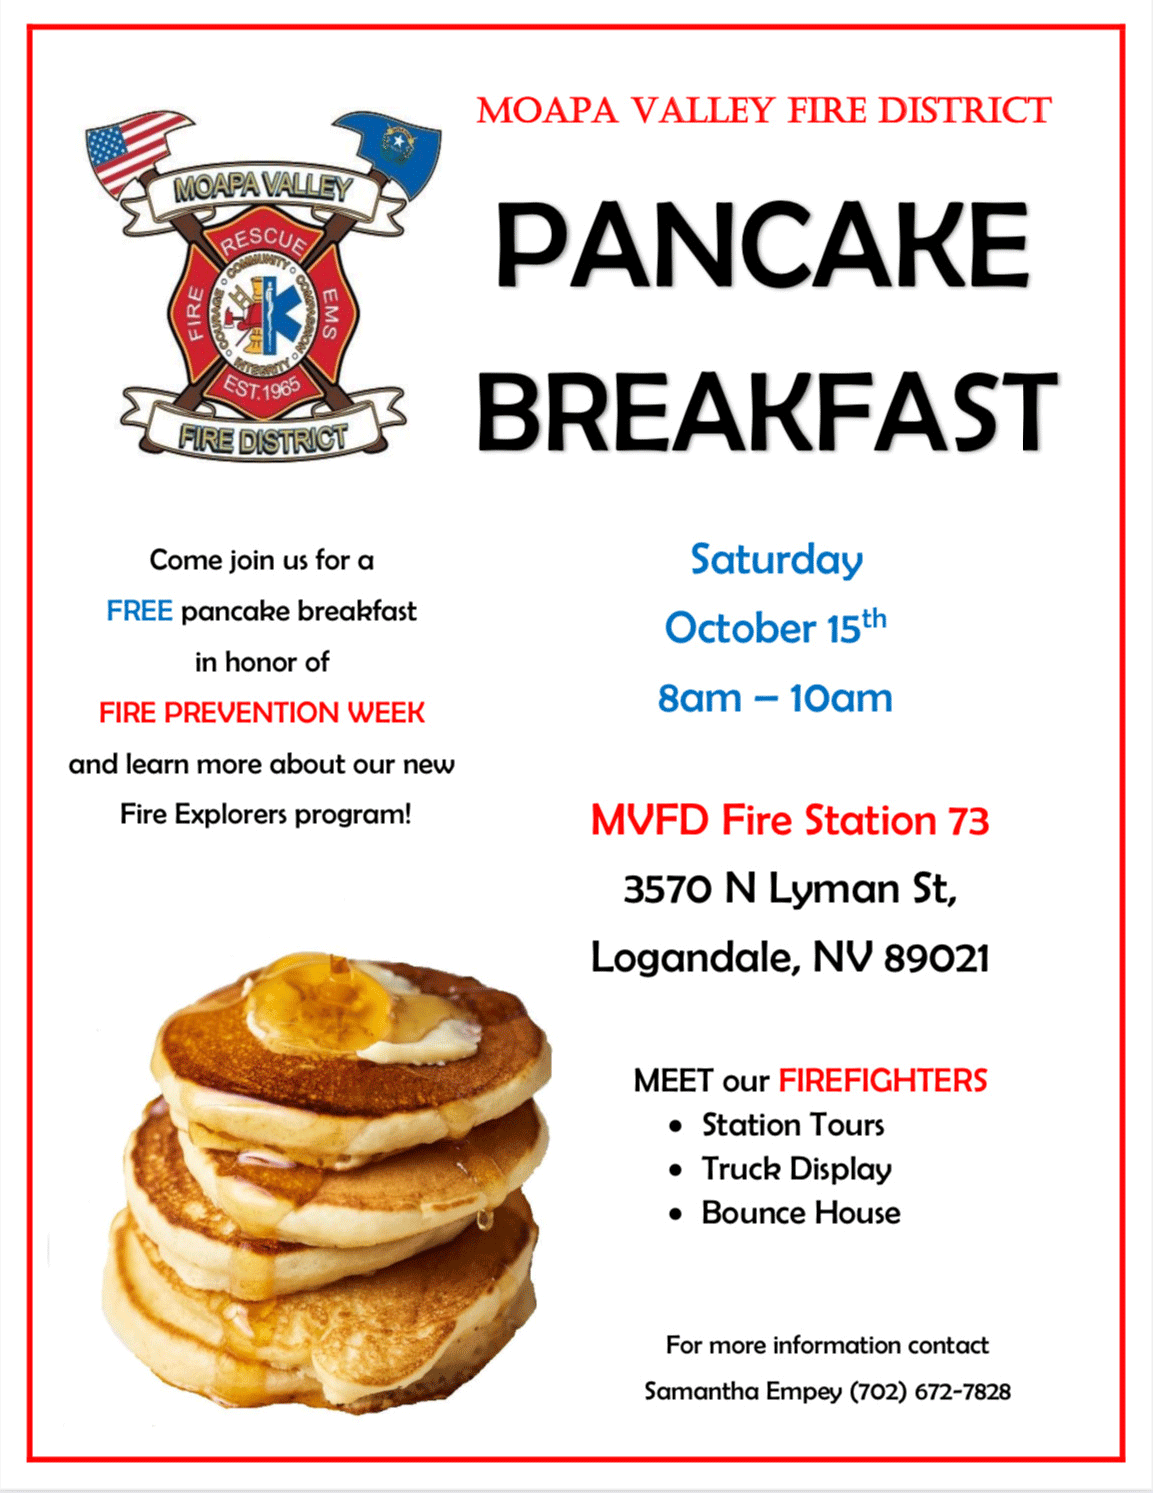 MV Fire District Pancake Breakfast @ MV Fire Station 73